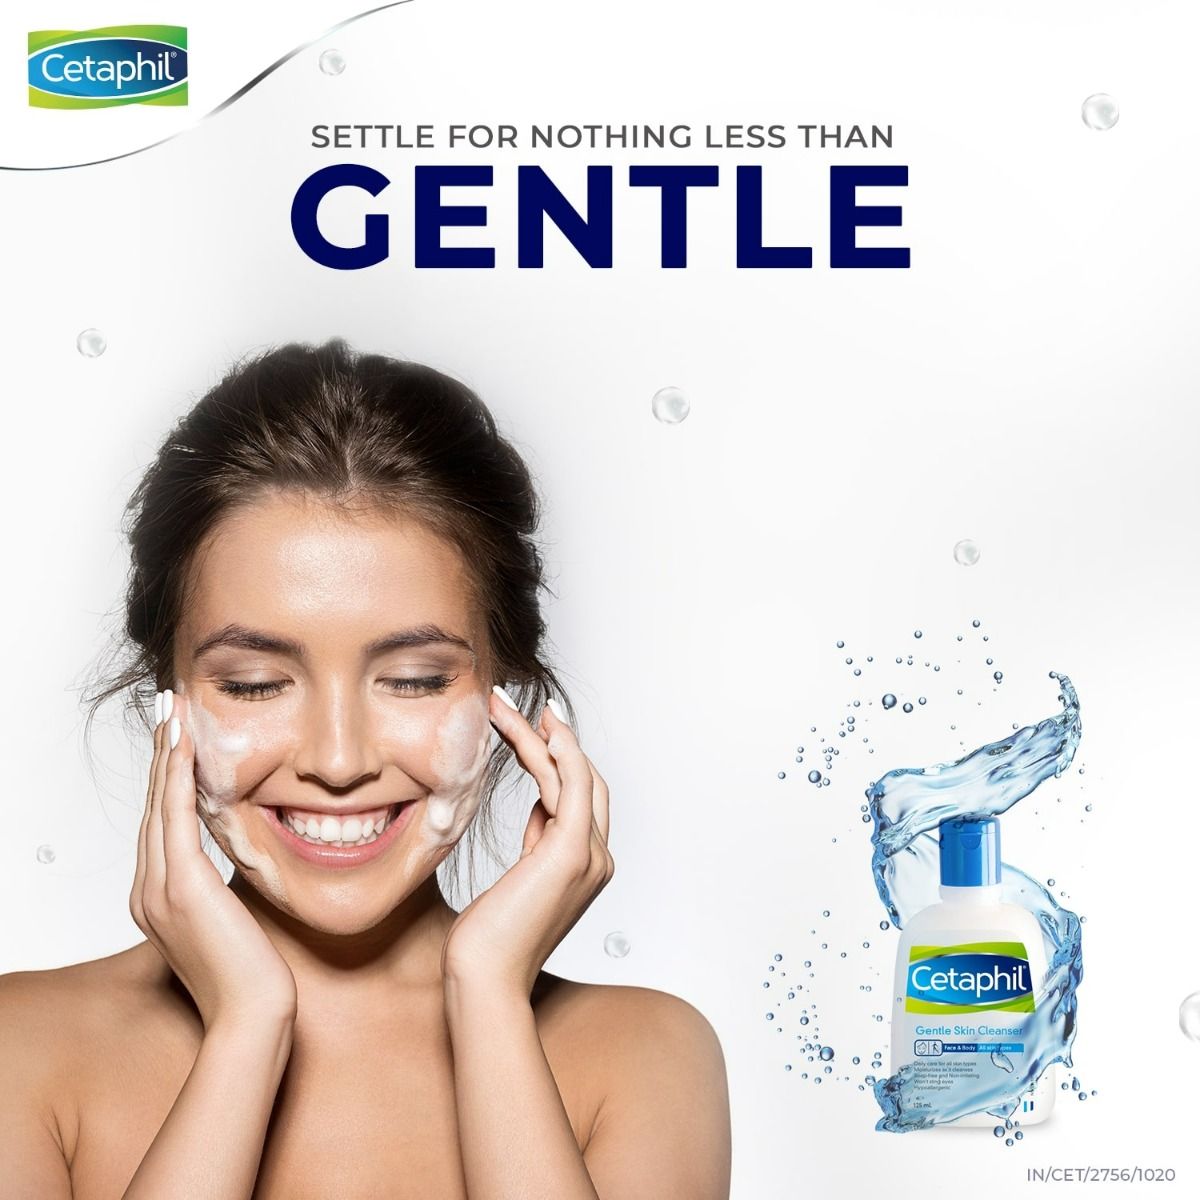 Cetaphil Gentle Skin Cleanser, 250 ml, Pack of 1 